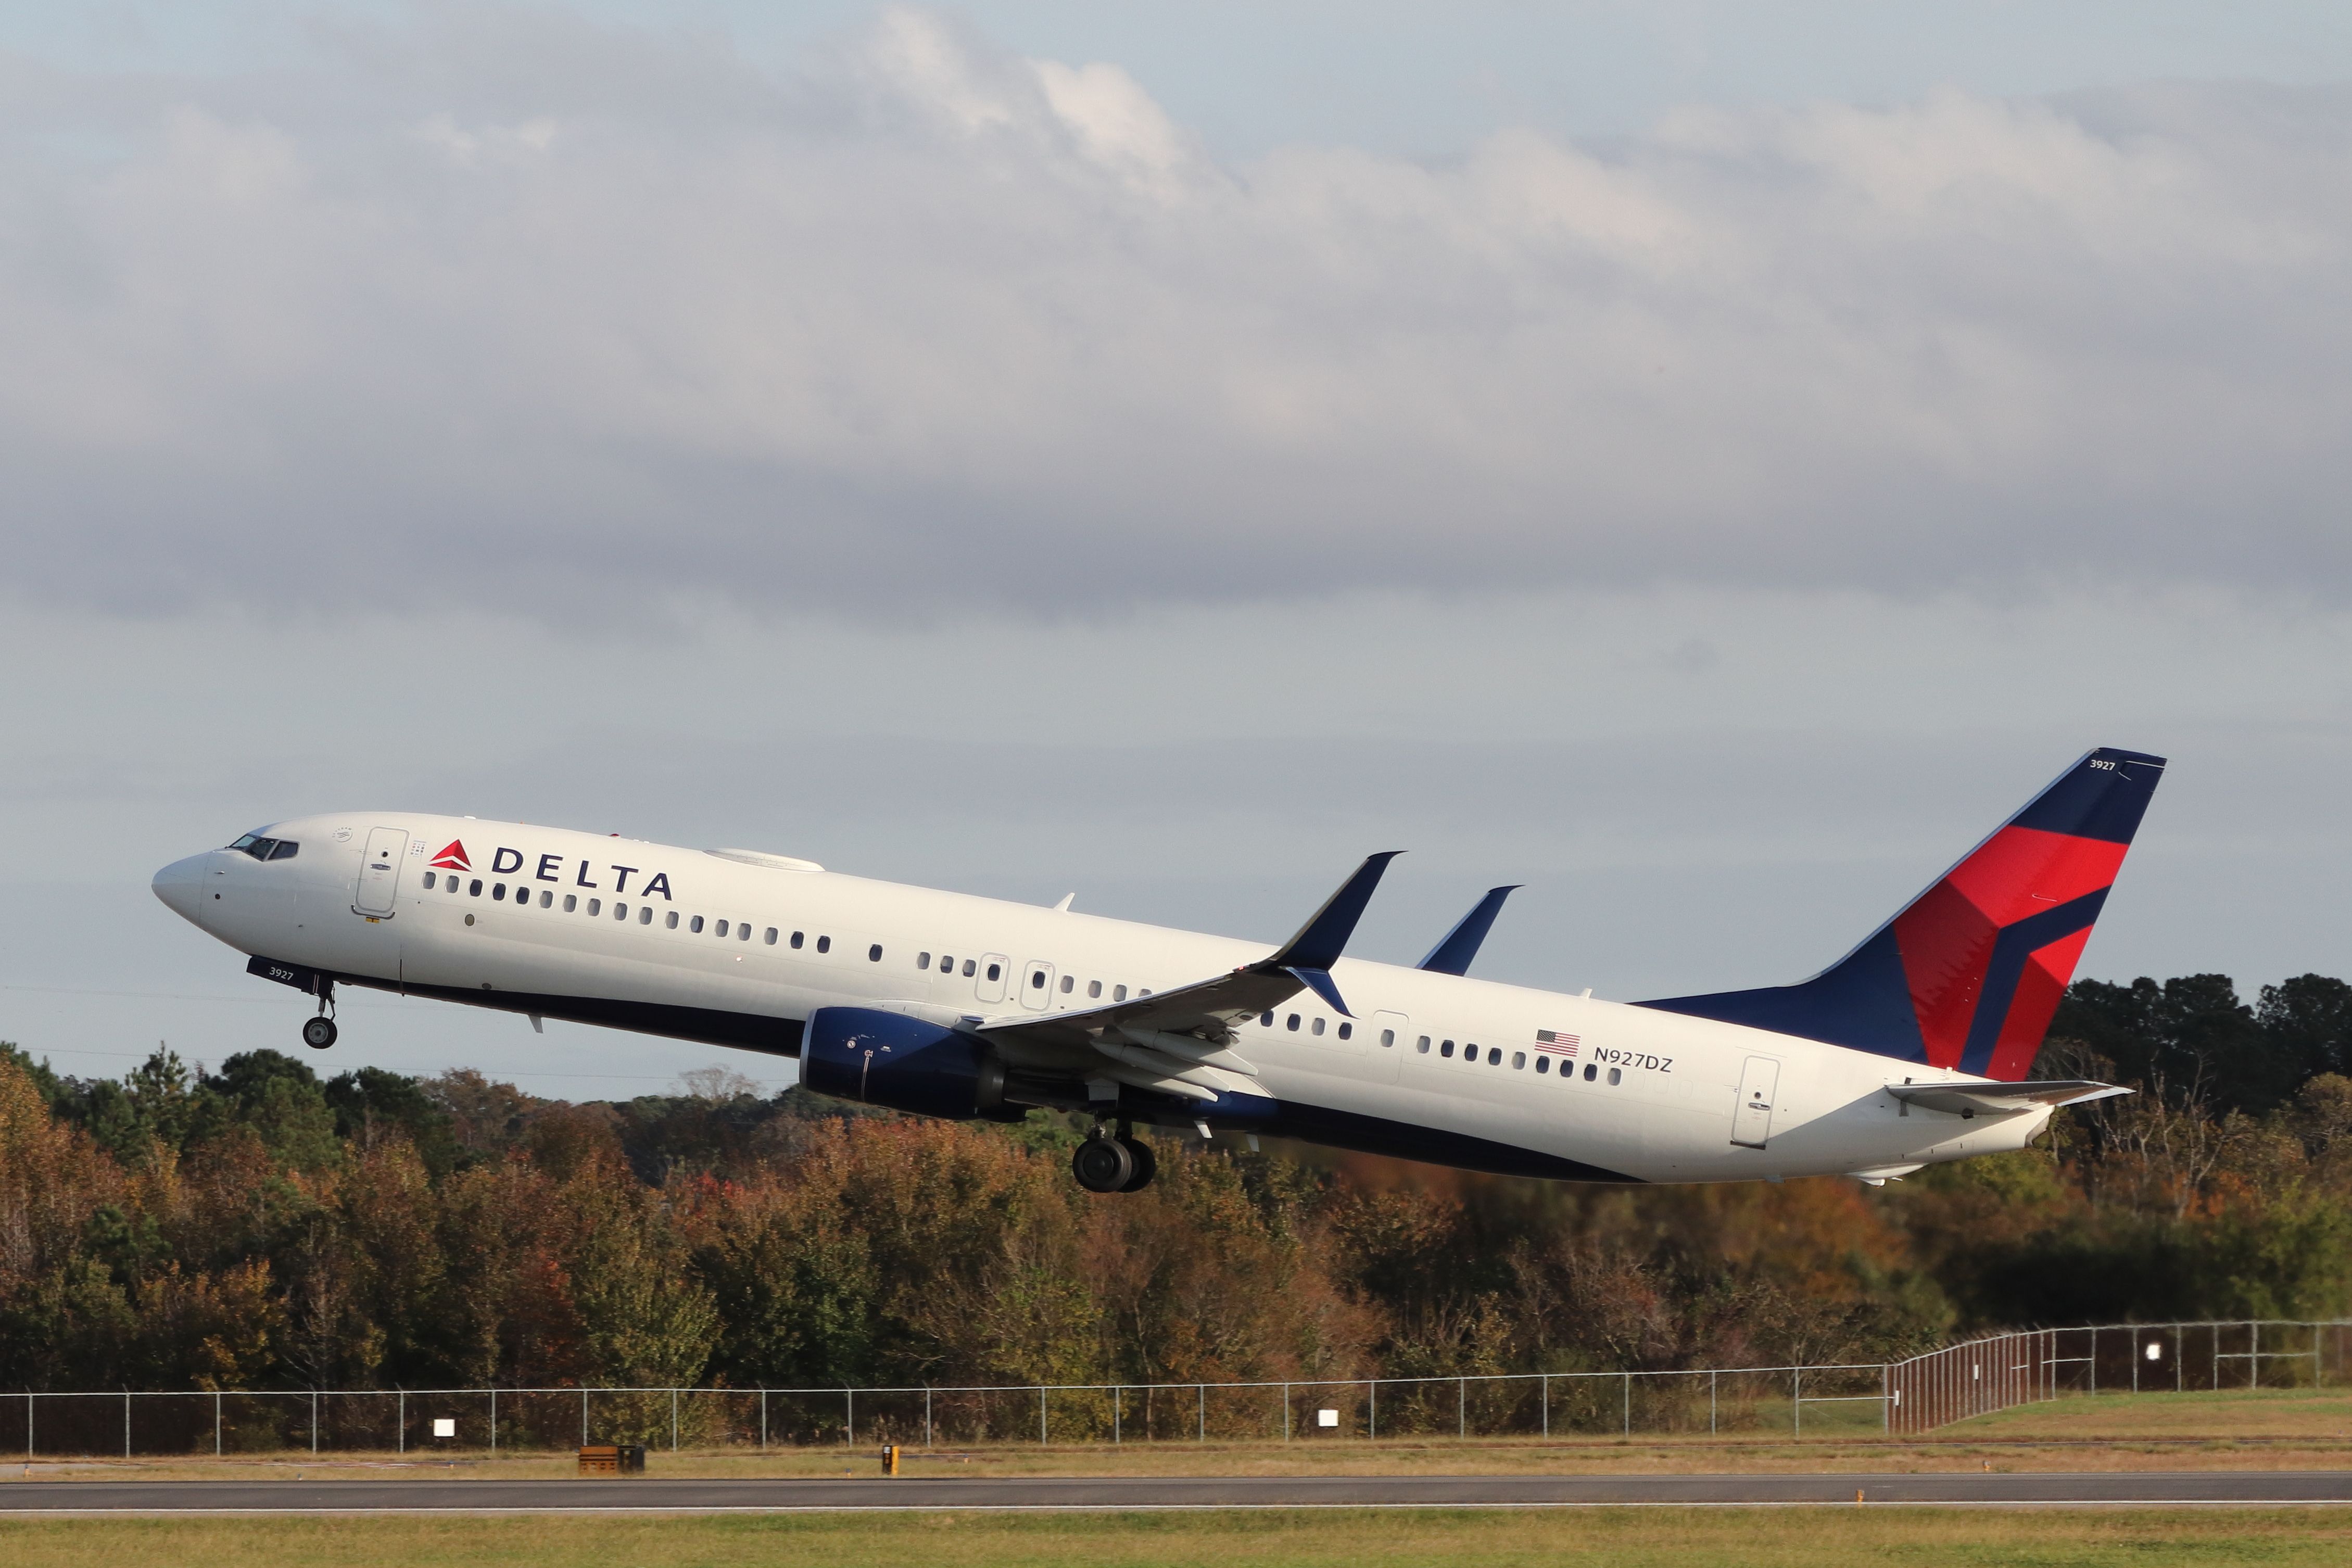 Delta Air Lines Boeing 737-900ER (N927DZ) departing.